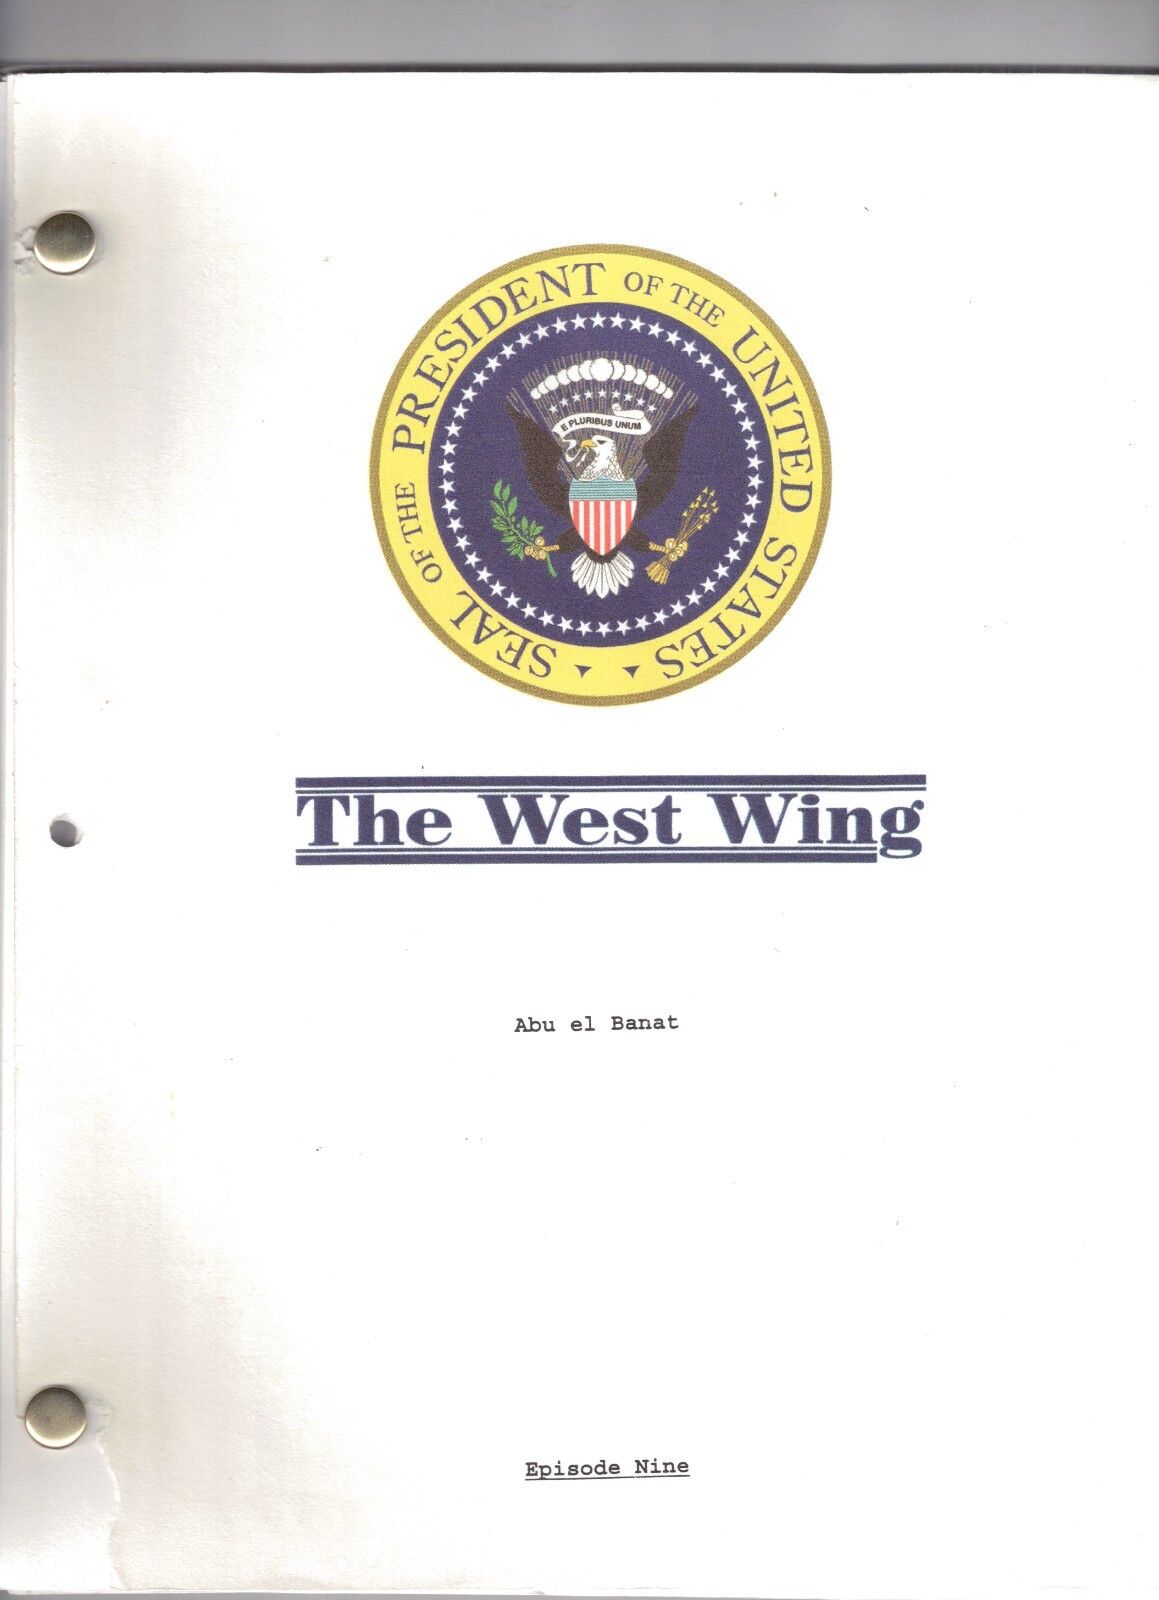 The West Wing Show Script "abu El Banat"